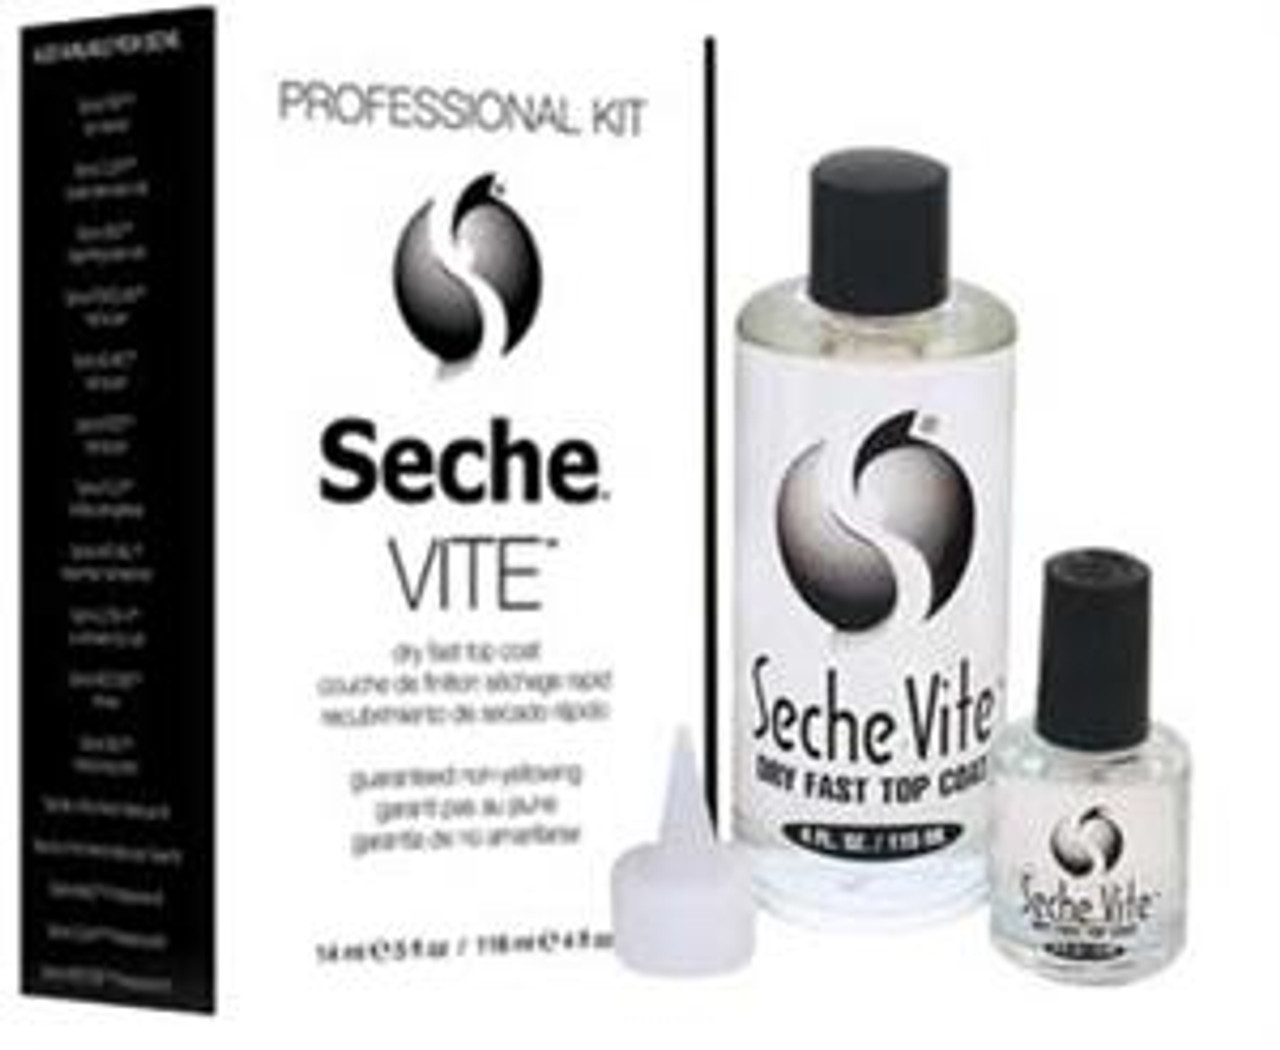 Seche Vite Professional Kit - (4 oz refill & .5 oz)